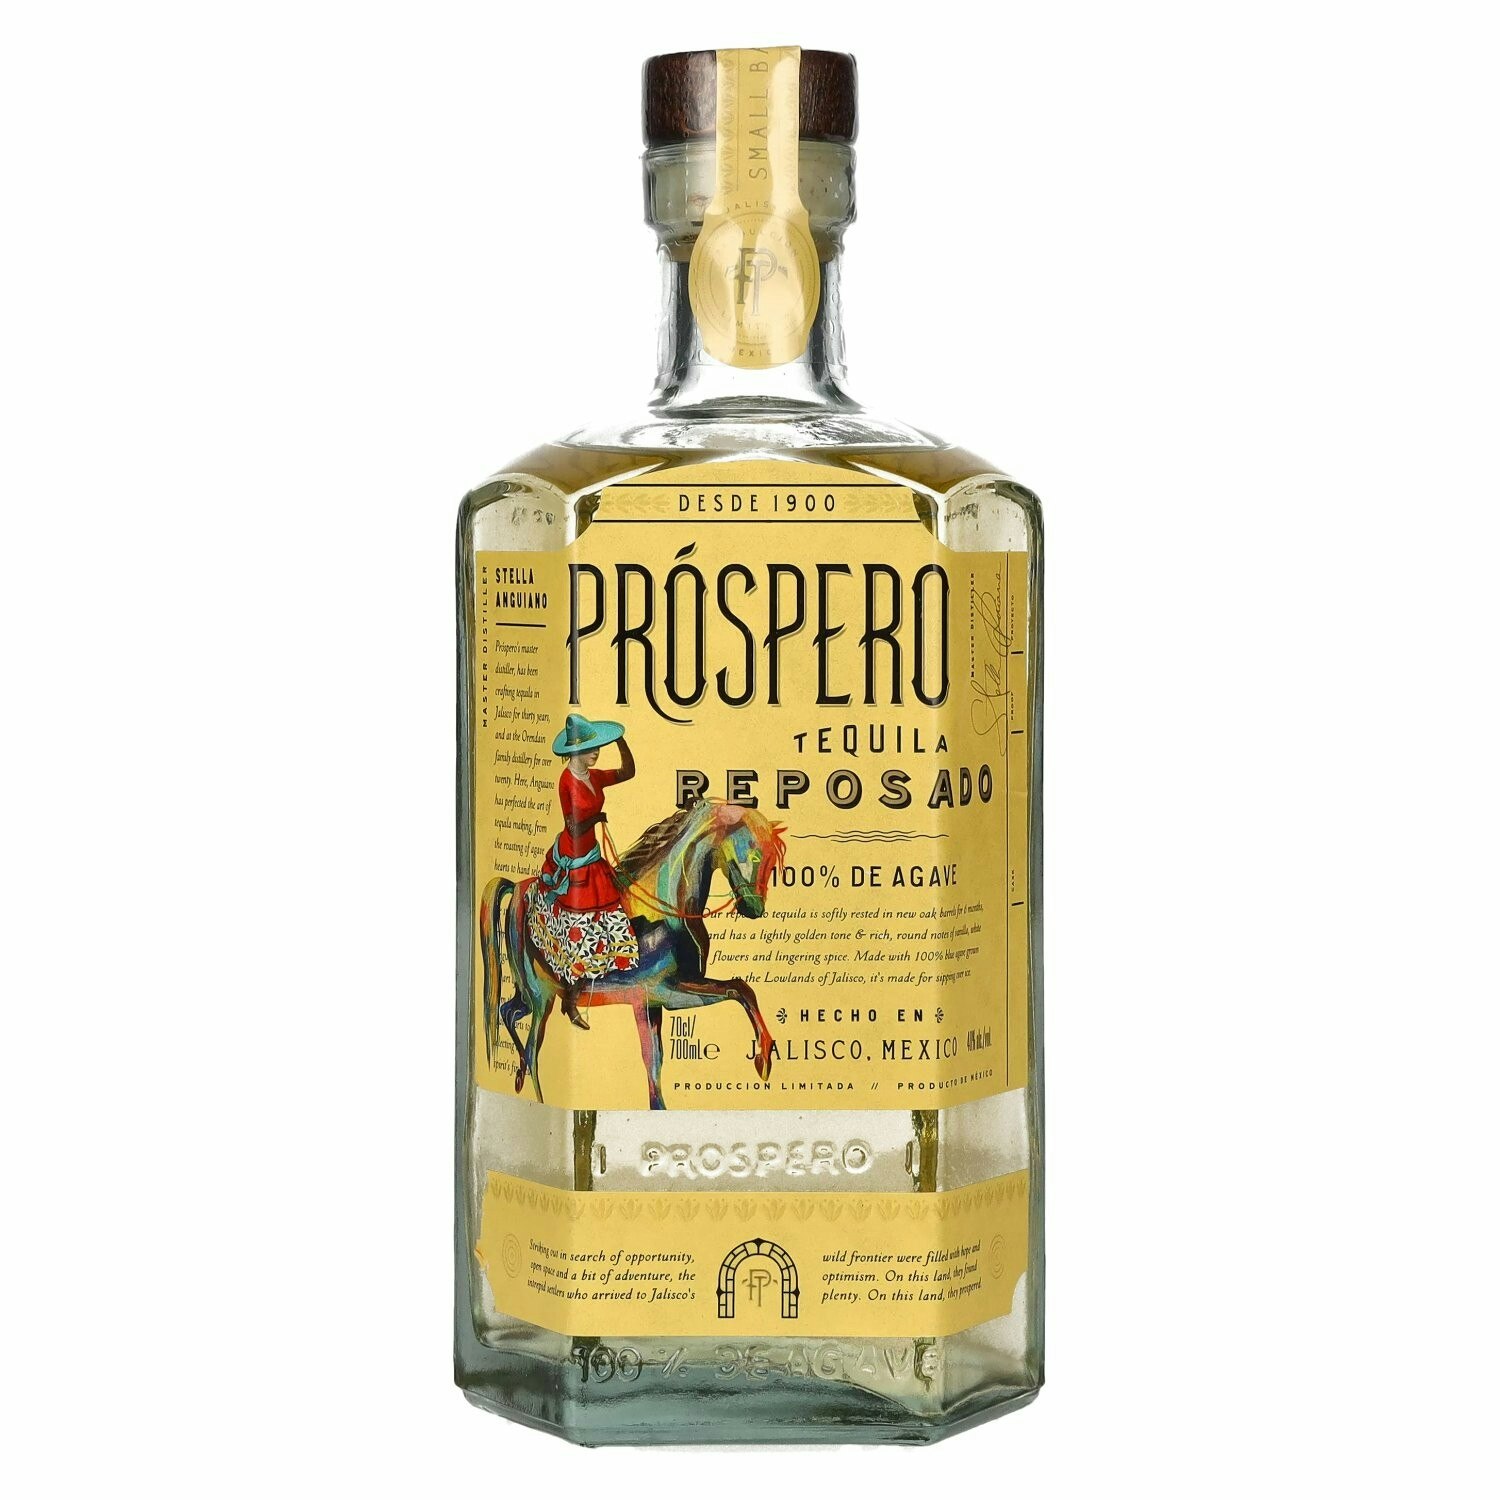 Próspero Tequila Reposado 100% De Agave by Rita Ora 40% Vol. 0,7l